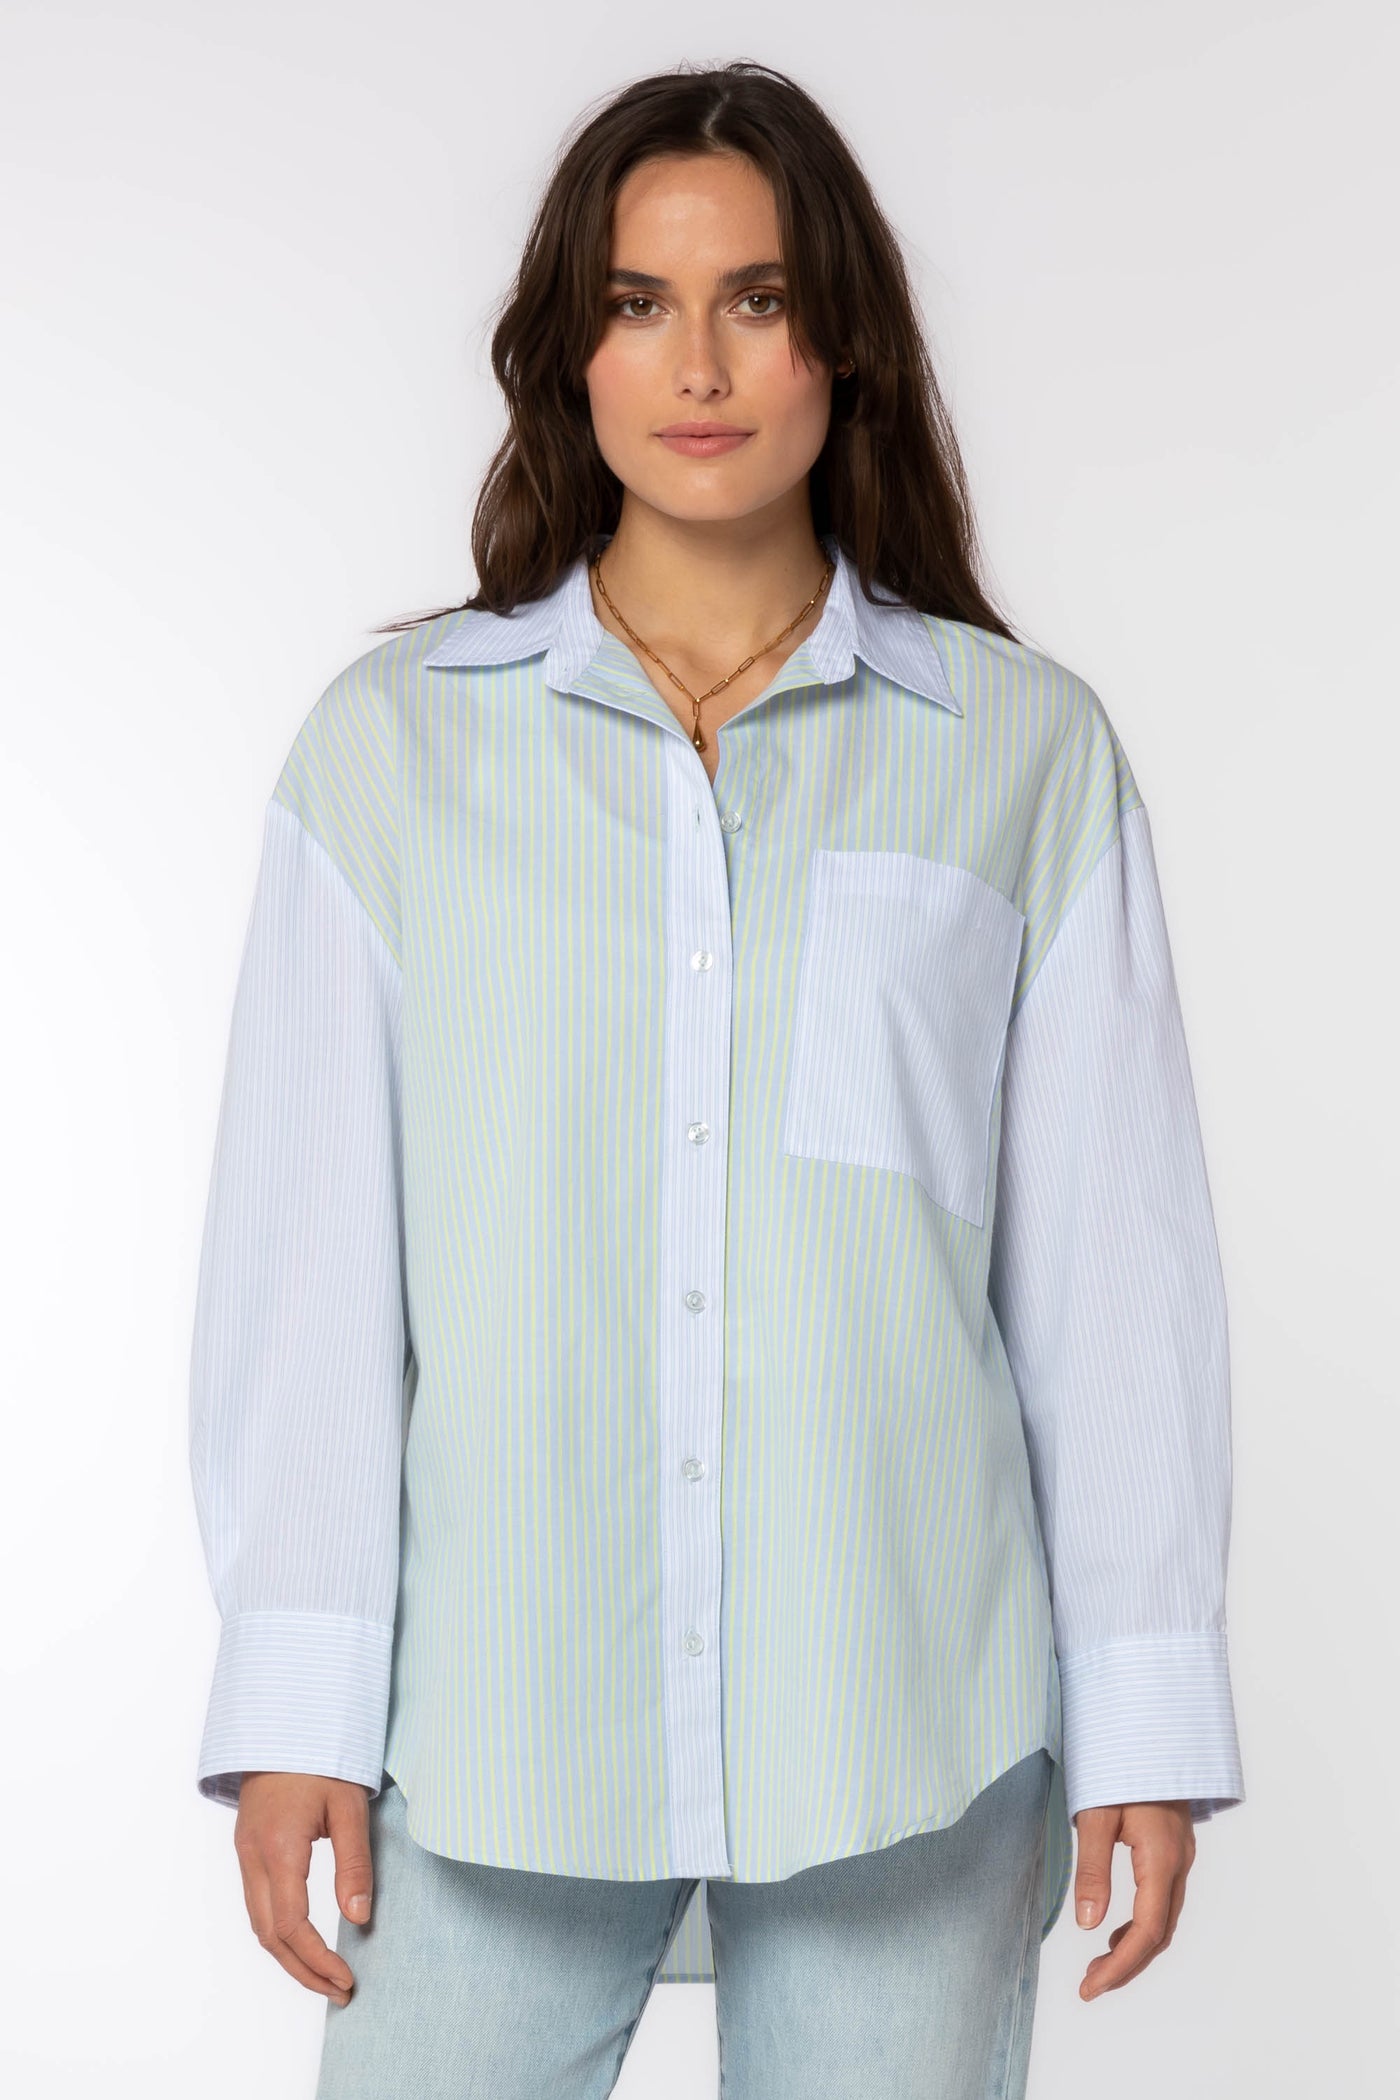 Sutton Shirt - Tops - Velvet Heart Clothing